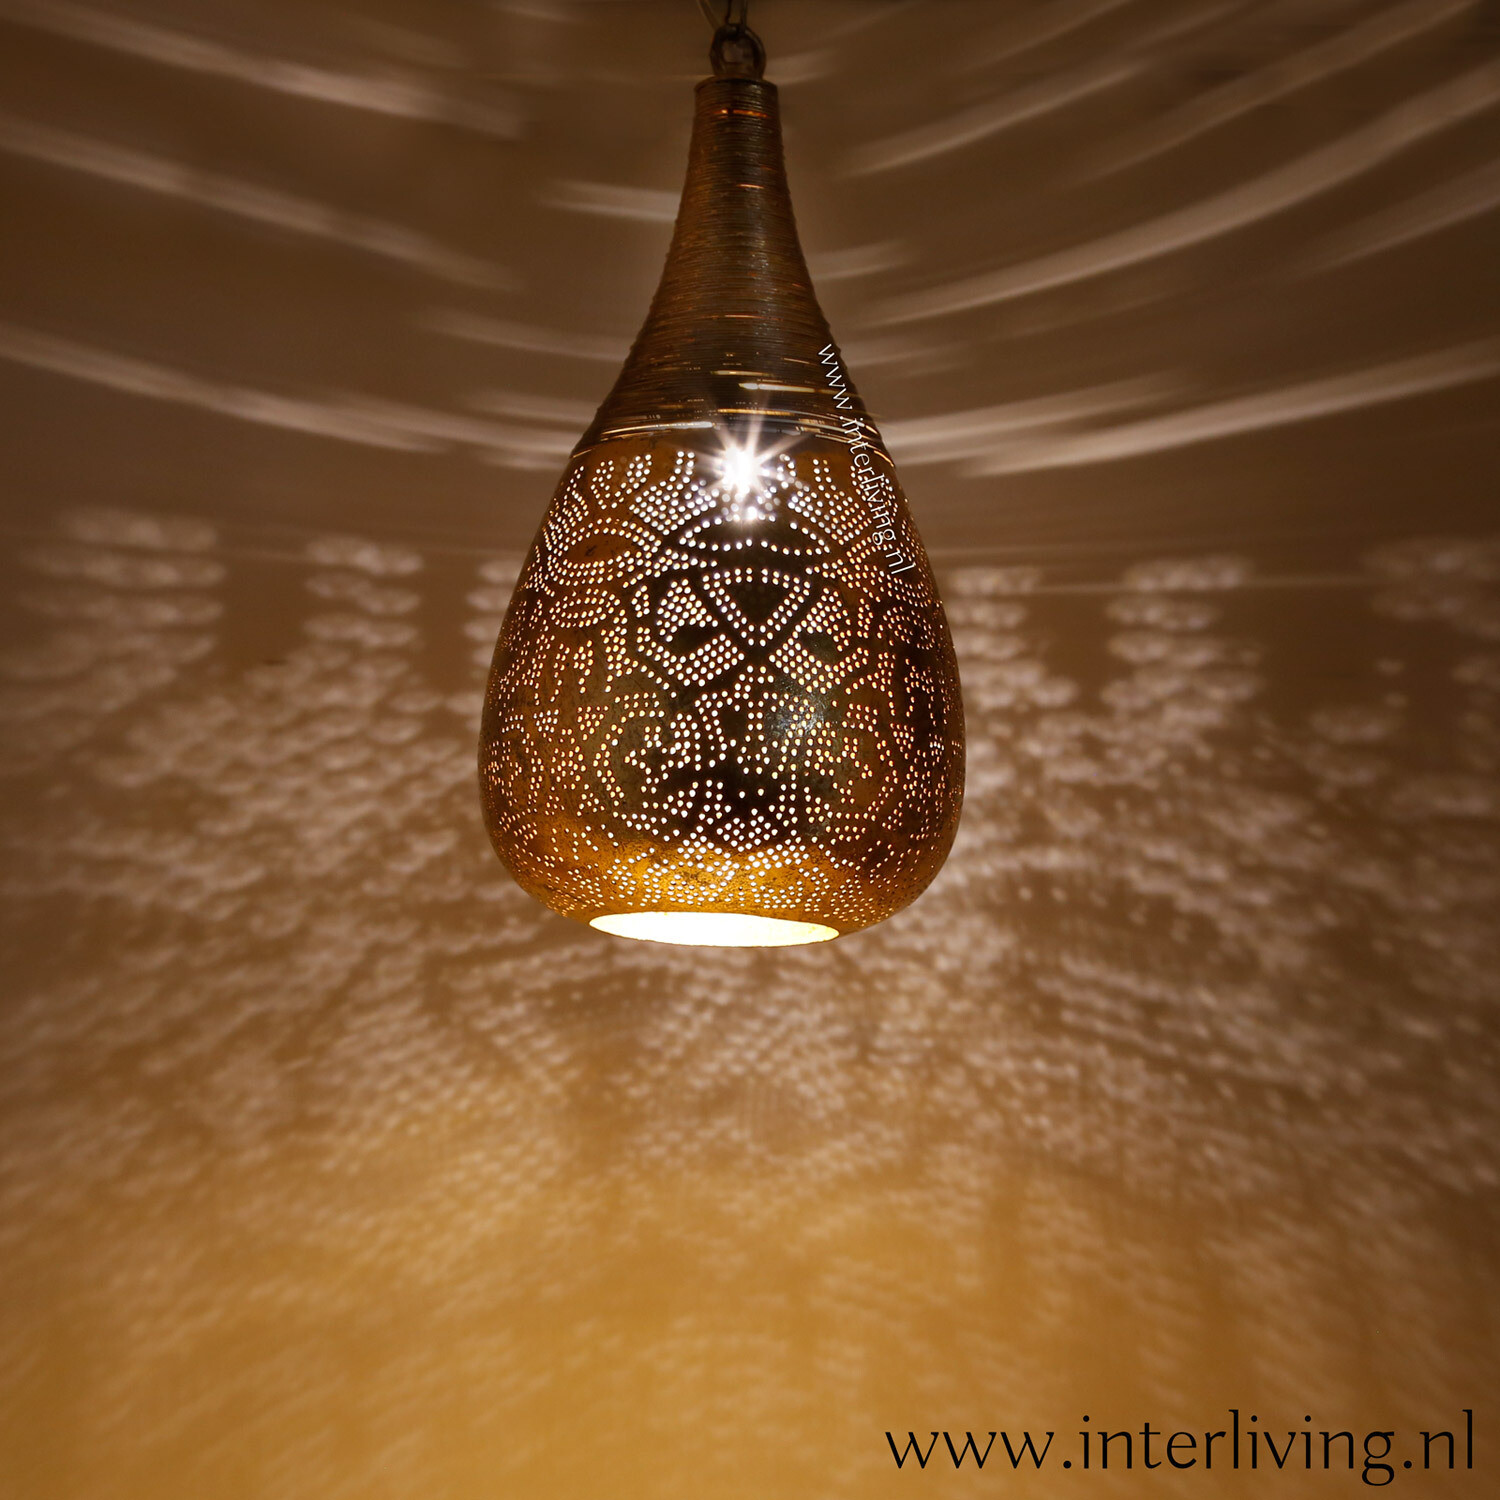 Zwijgend toelage Microbe hanglamp "Bindi" oosters druppel model met gaatjespatronen - filigrain  design & bohemian stijl - gedraaid metaaldraad - vintage goud kleur